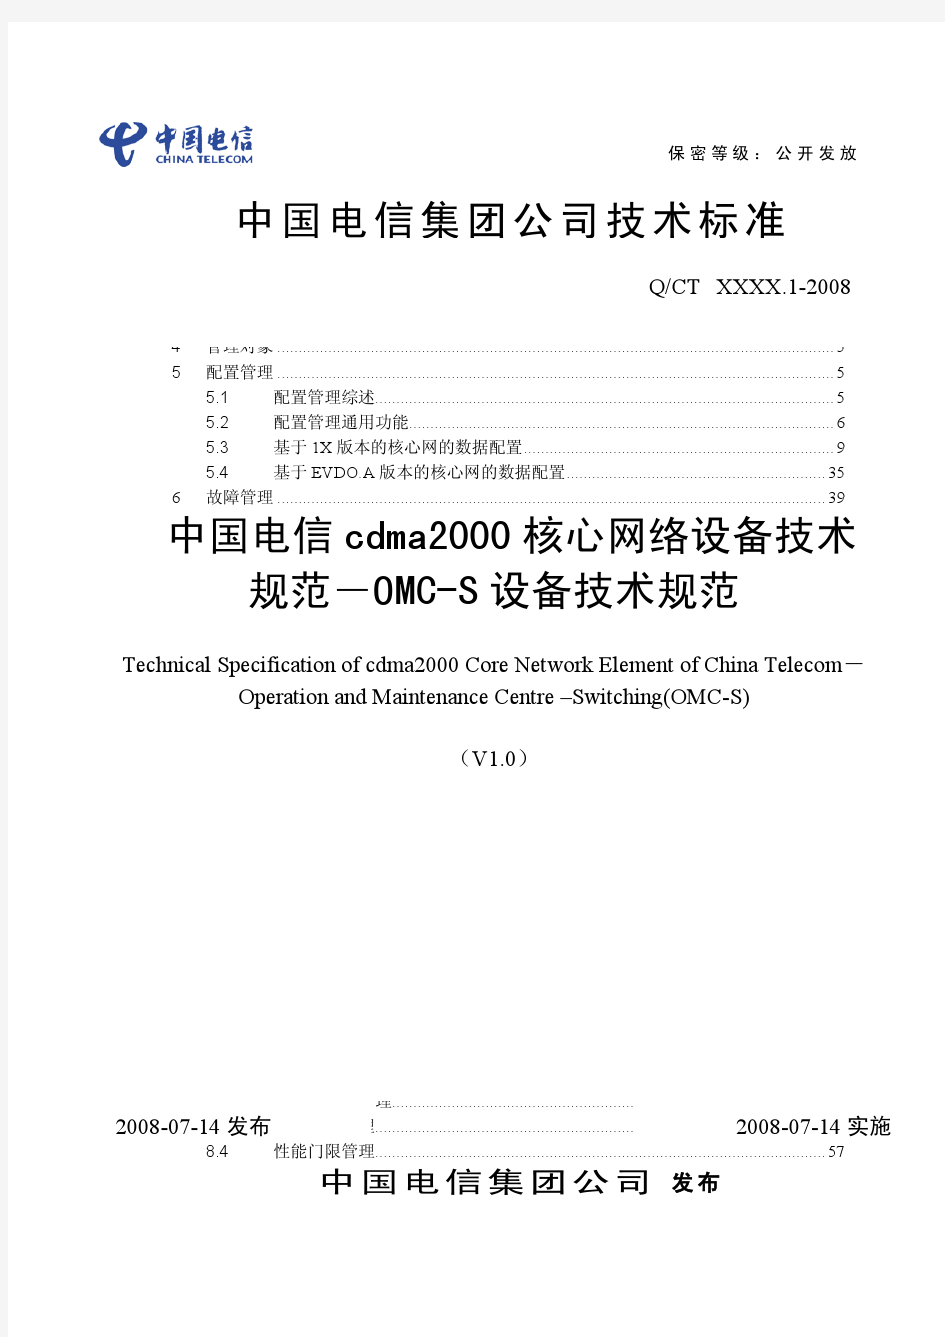 中国电信cdma2000核心网络设备技术规范-OMC-S设备技术规范V1.0